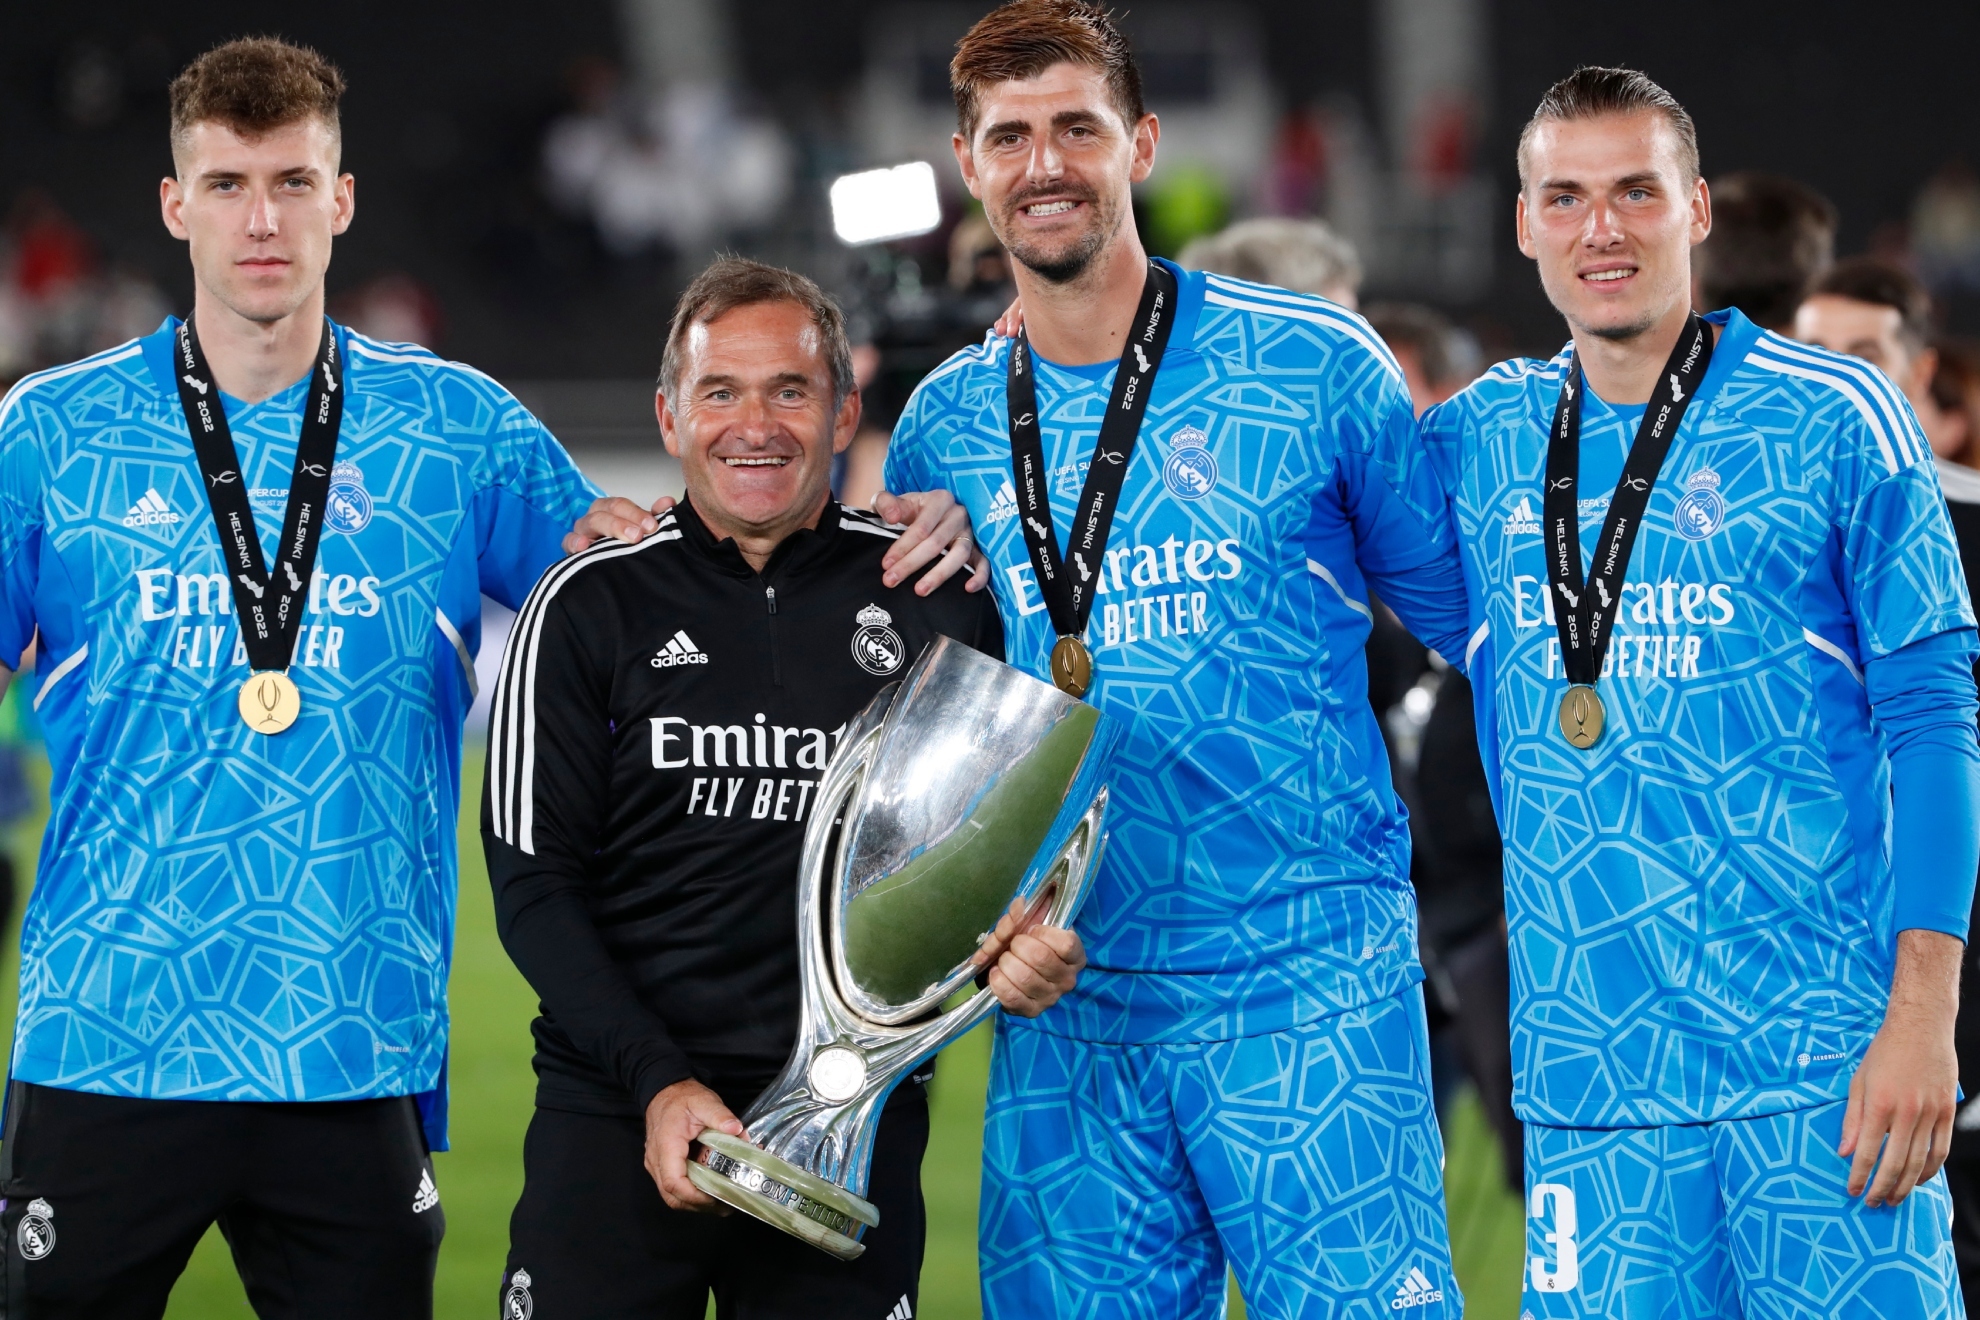 Luis Lpez, Llopis, Courtois y Lunin, posando juntos con el trofeo de la Supercopa de Europa.